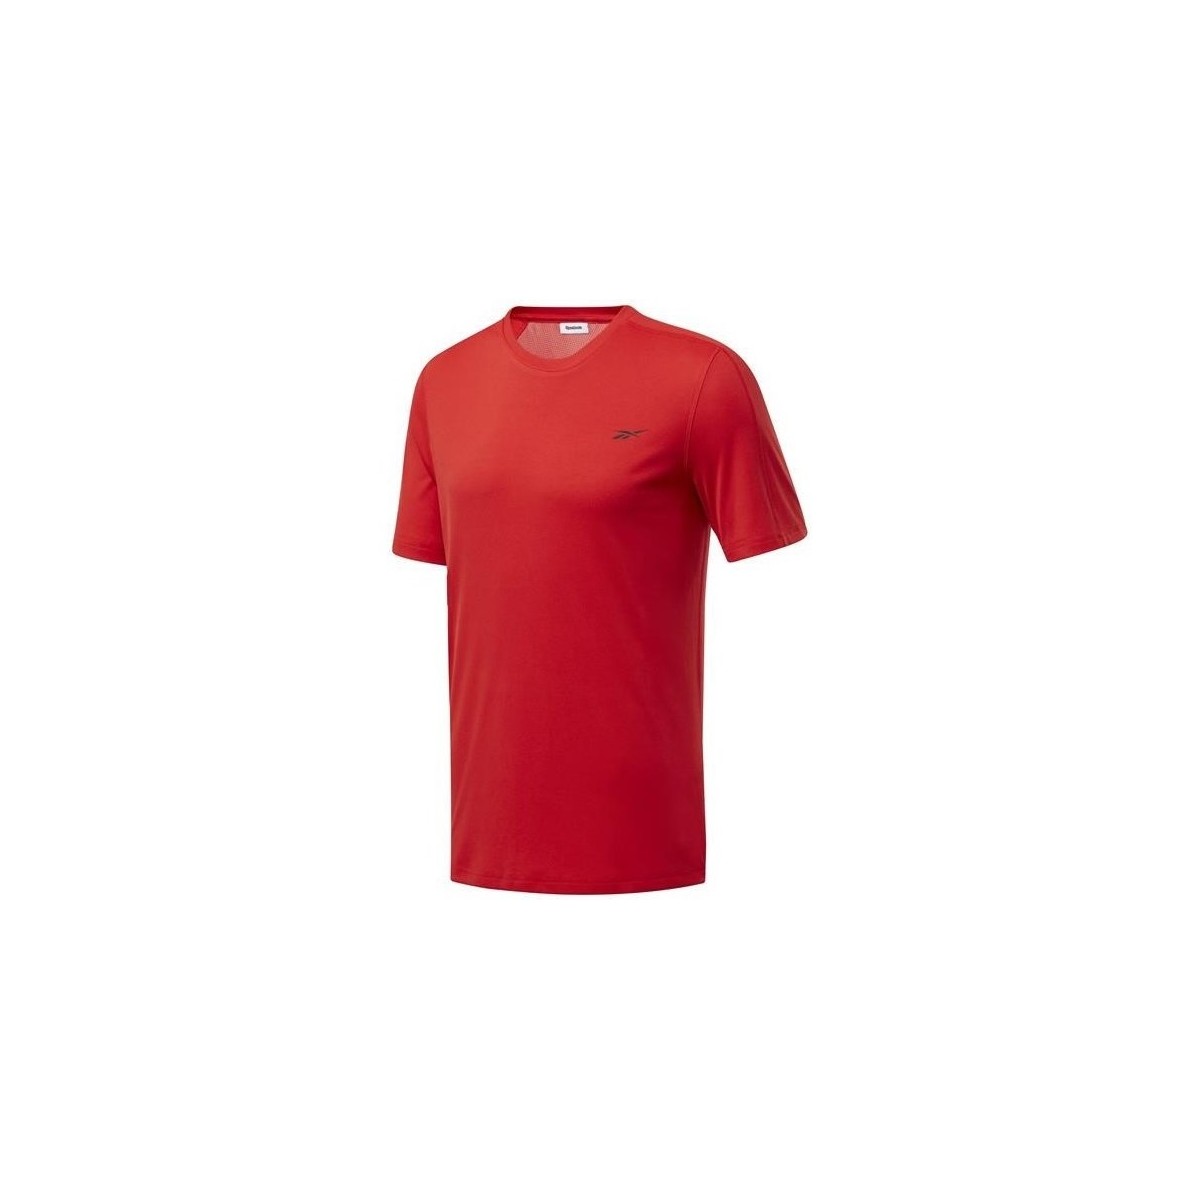 Îmbracaminte Bărbați Tricouri mânecă scurtă Reebok Sport Wor Comm Tech Tee roșu